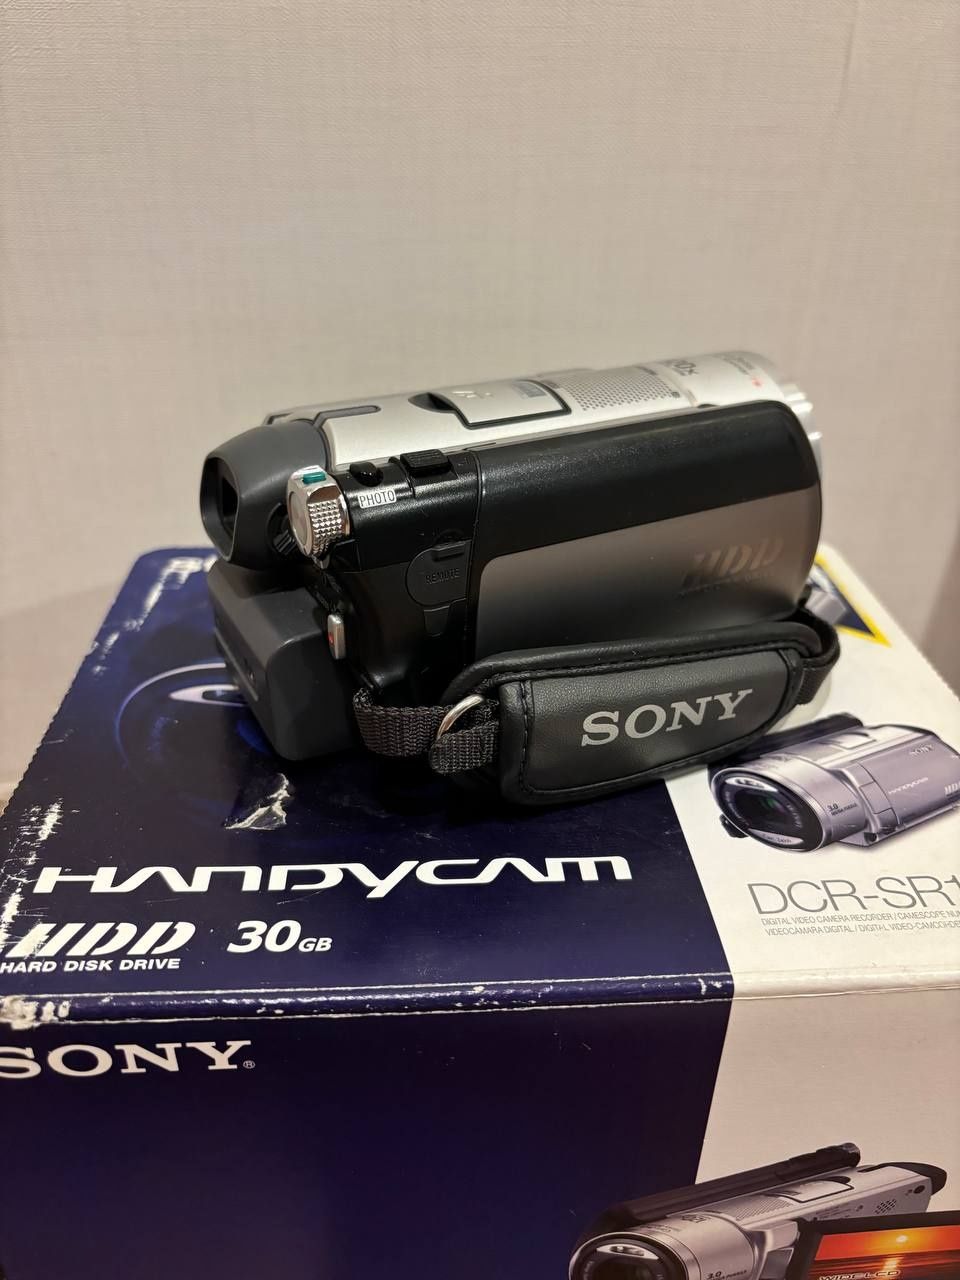 Sony Handycam DCR-SR 100E